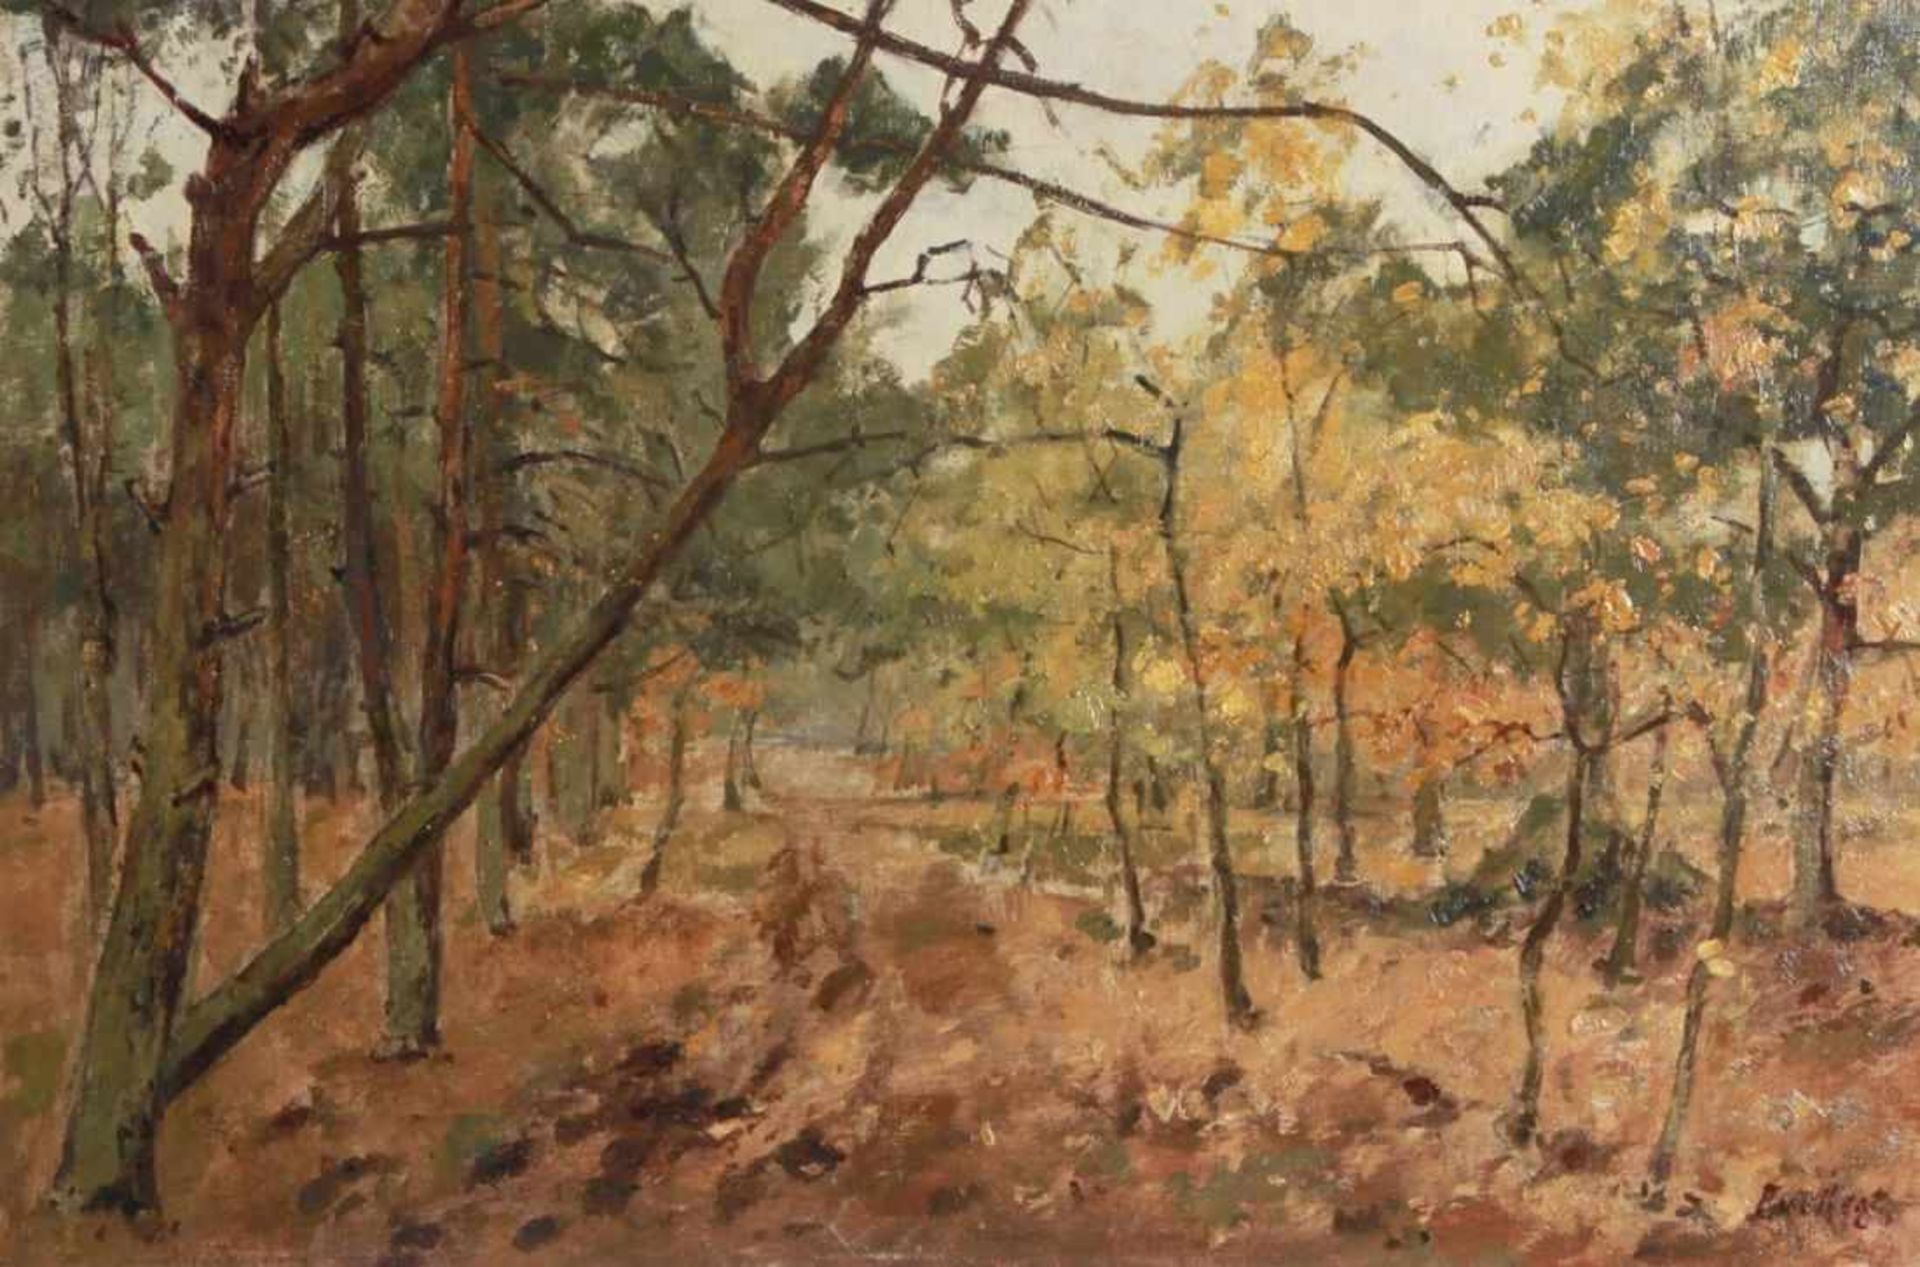 Regt, Pieter de, holländischer Maler 1877 - 1960. "Herbstlicher Weg", sign., Öl/Lw. aufHolz, 40 x 60